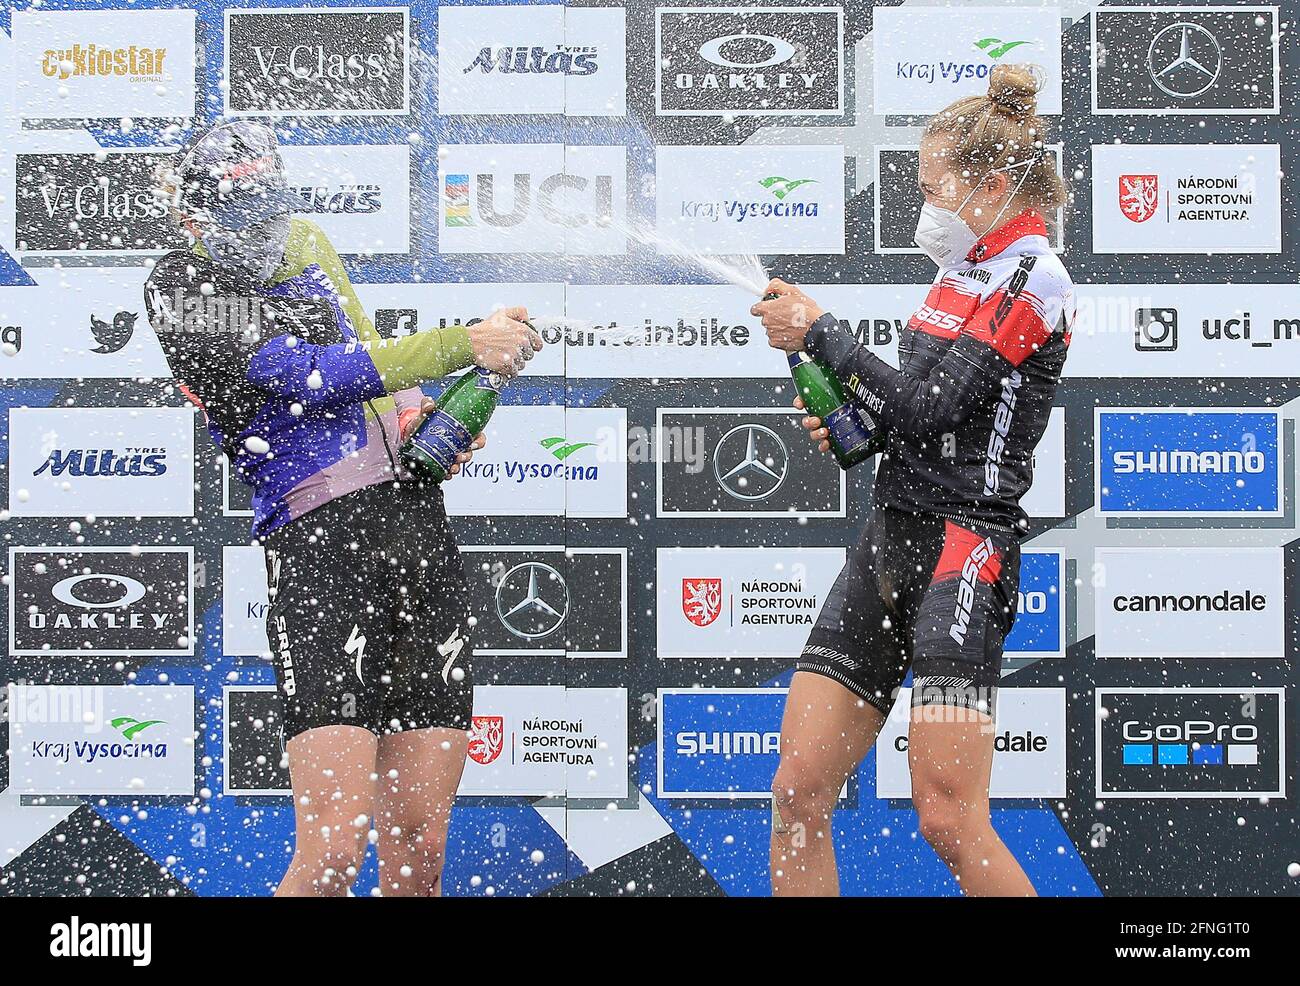 L-R Haley Batten (USA; Zweiter) und Loana Lecomte (Frankreich; erster)  feiern am 16. Mai 2021 auf dem Podium beim  Cross-Country-Mountainbike-Weltcup der Damen in Nove Mesto na Morave,  Tschechien. (CTK Photo/Libor Plihal Stockfotografie -